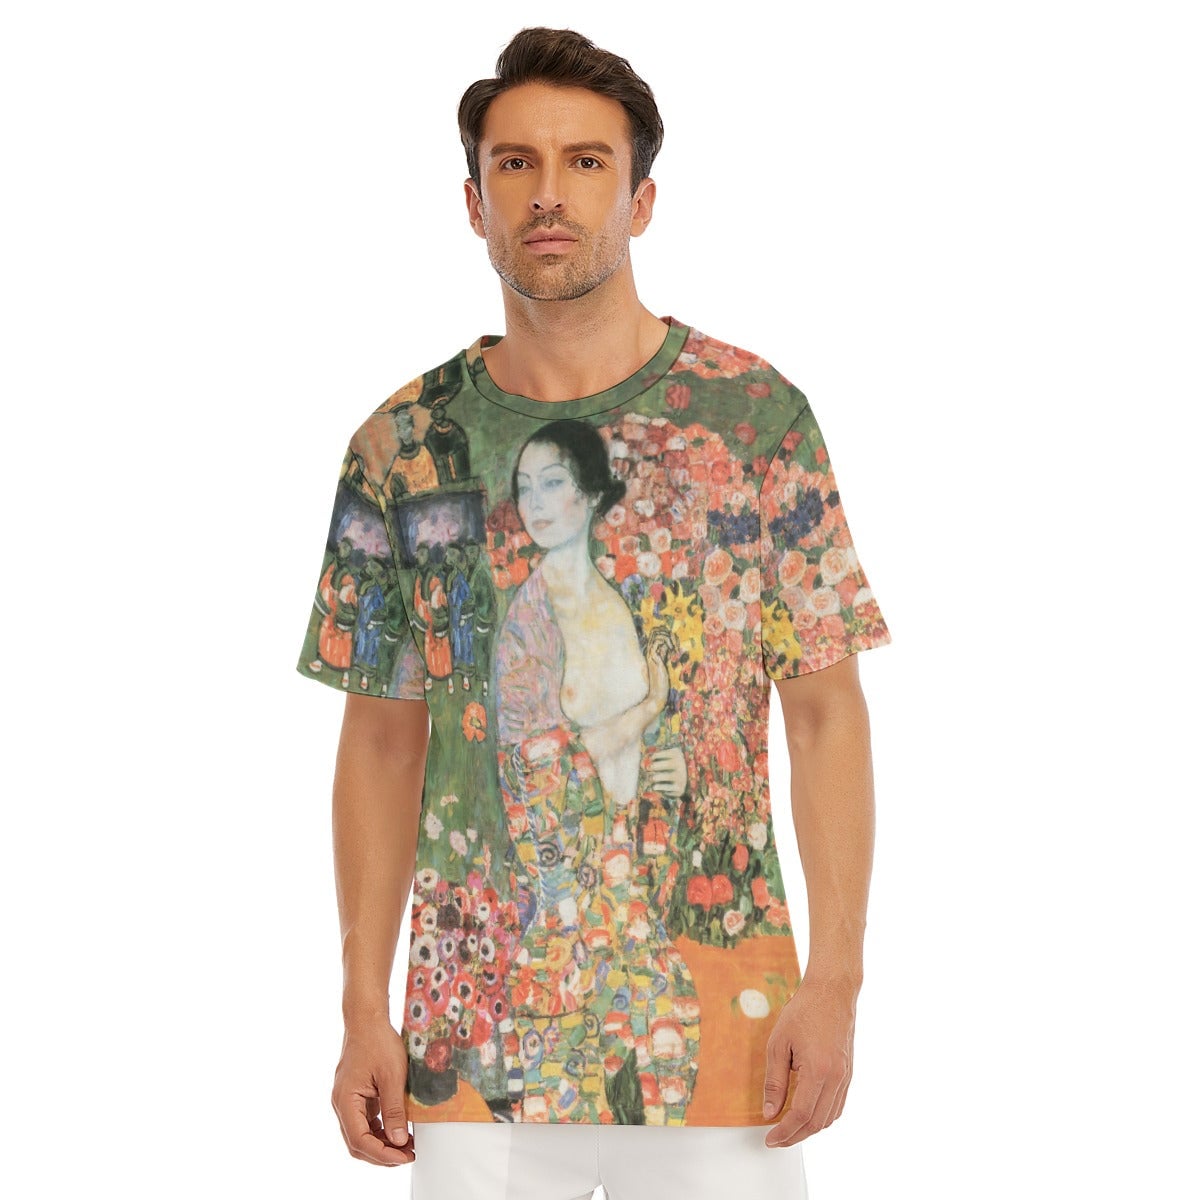 Gustav Klimt’s The Dancer Painting T-Shirt